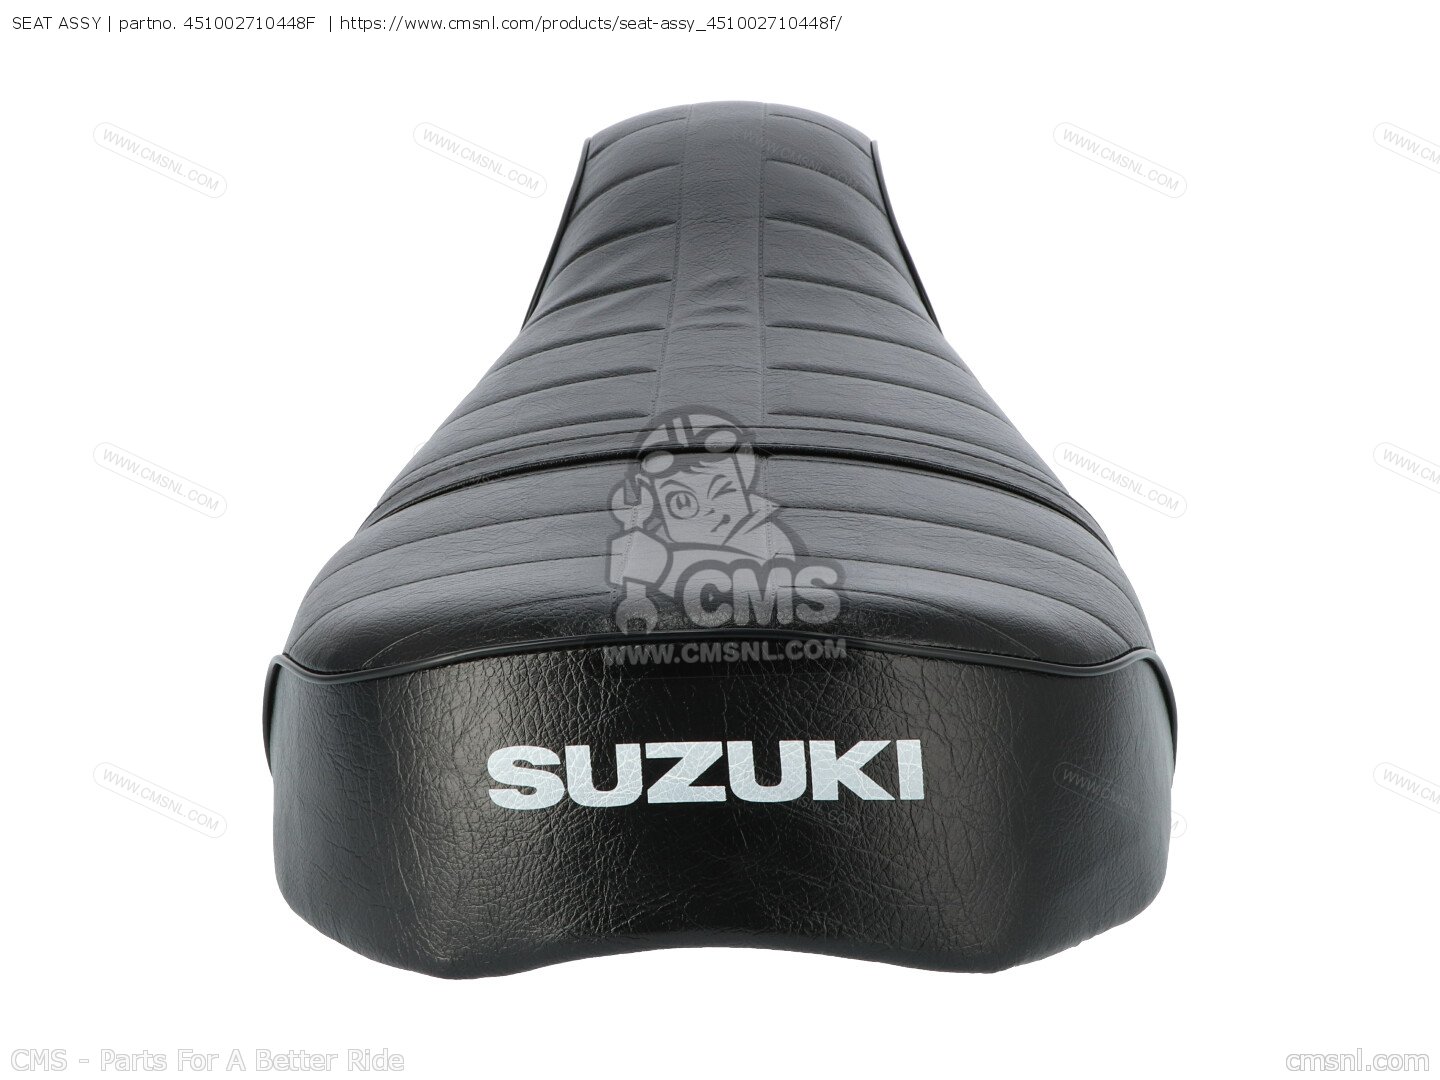 451002710448F: Seat Assy Suzuki - buy the 45100-27104-48F at CMSNL